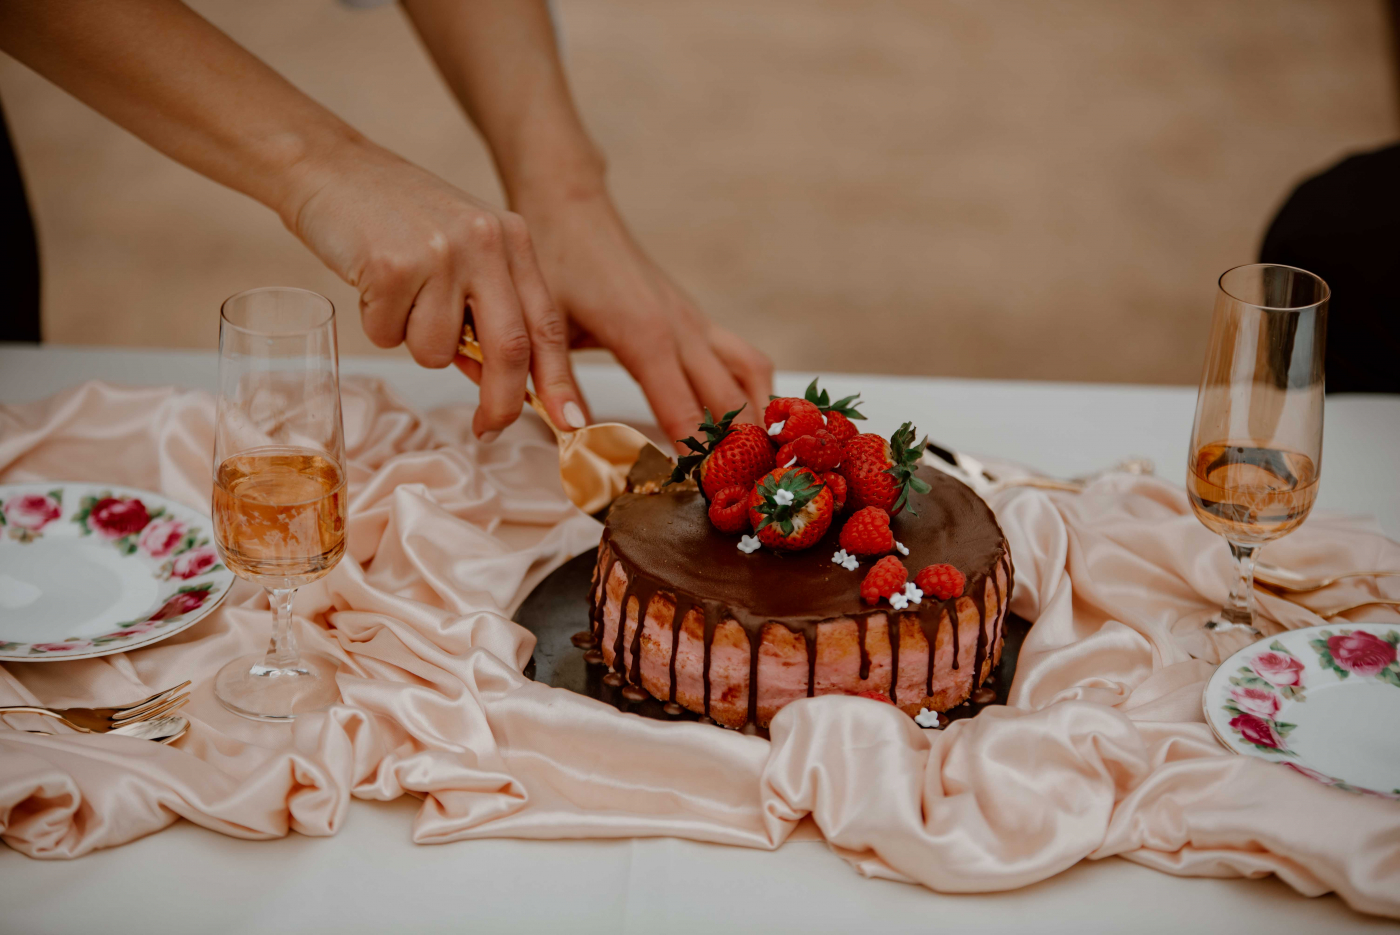 Brautpaar schneidet Hochzeitstorte an, umgeben von Hochzeitsblumen und Hochzeitsdeko auf der Hochzeitsfeier.